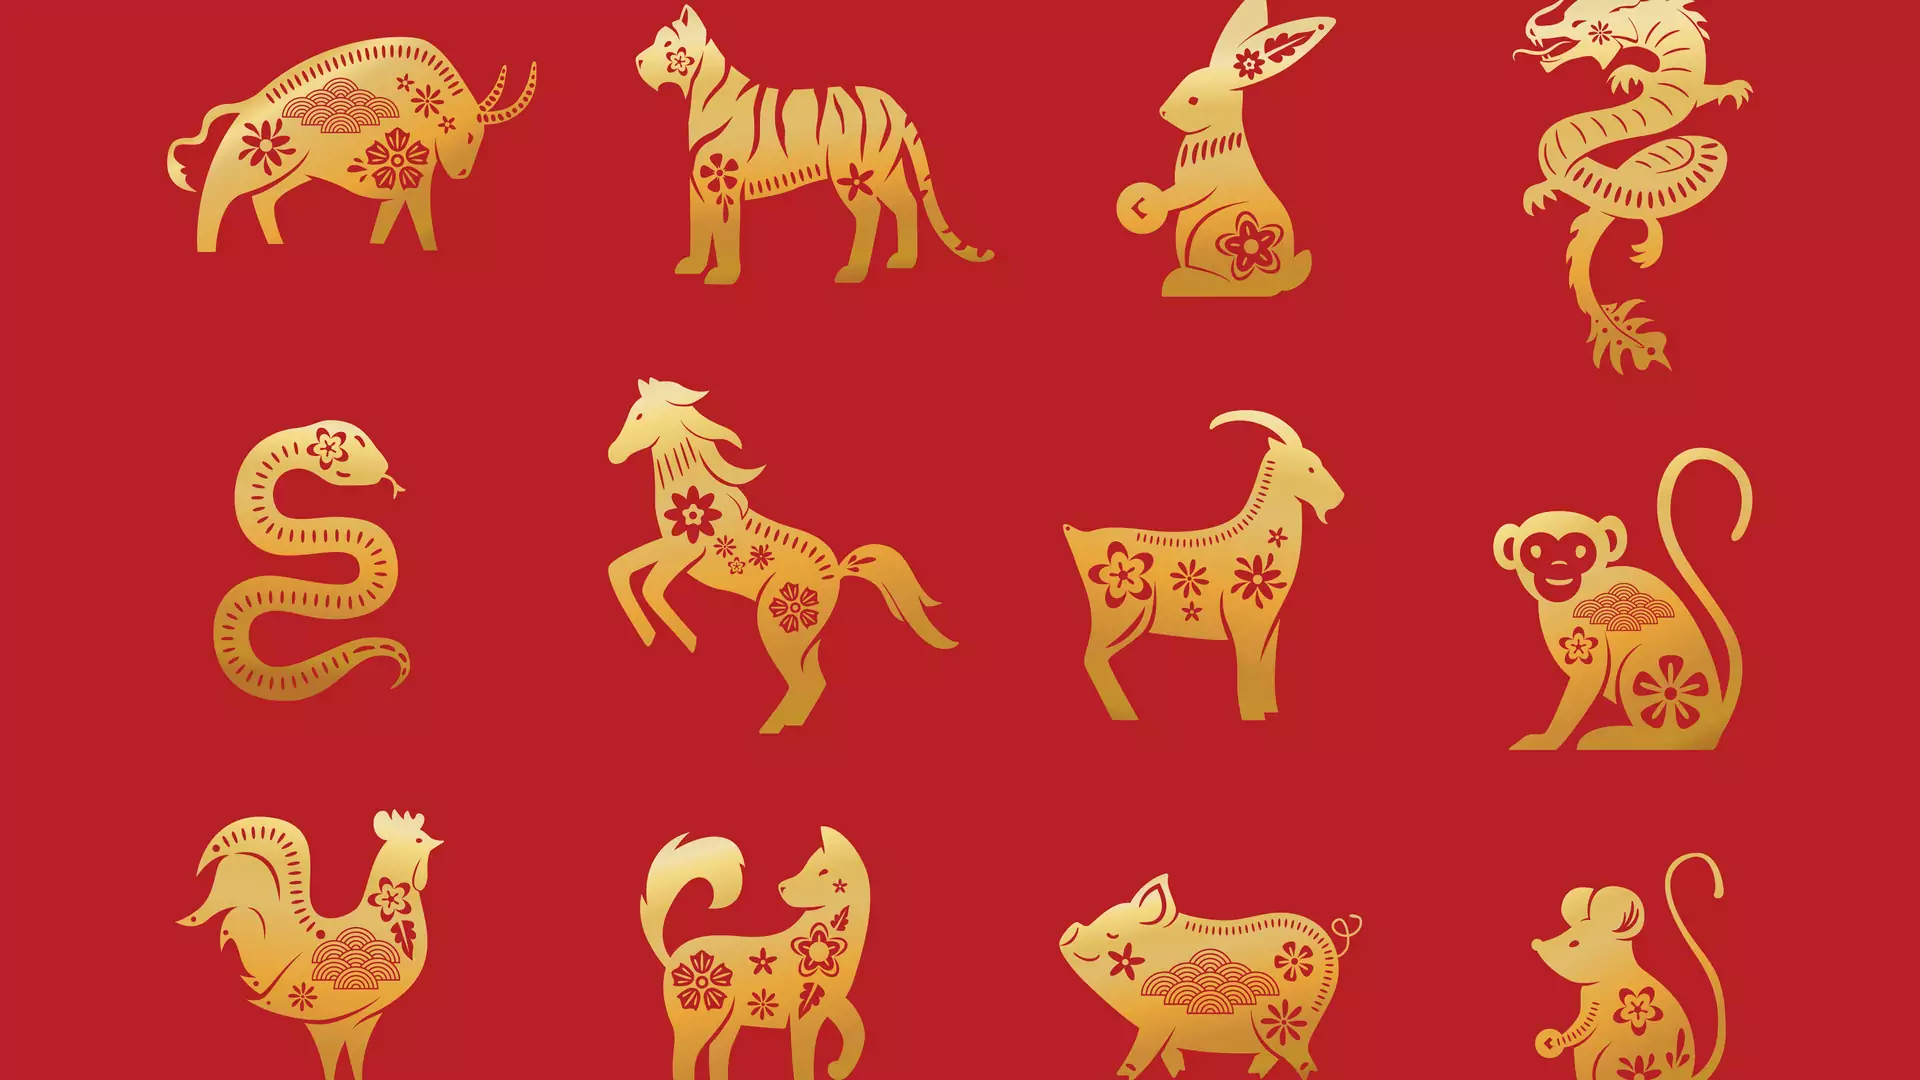 Chińskie znaki zodiaku – horoskop partnerski. Sprawdź, kto do ciebie pasuje